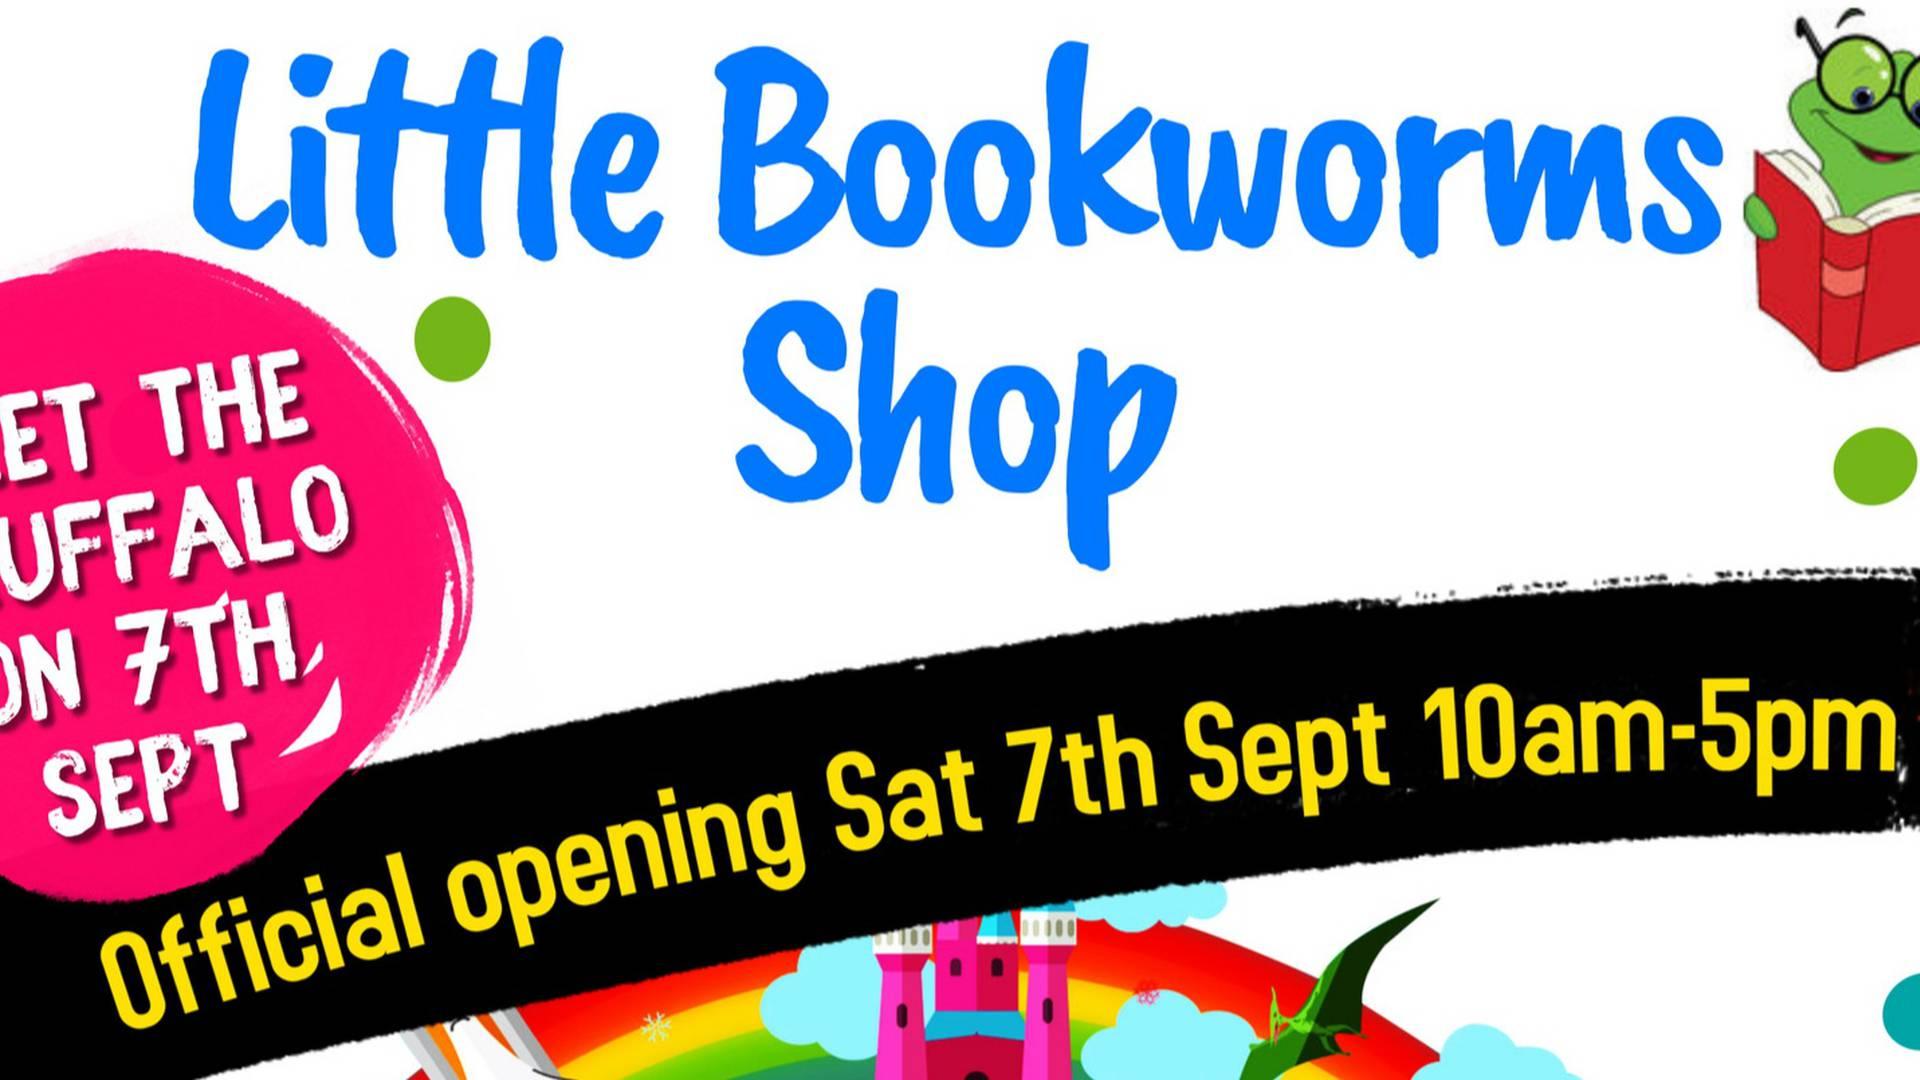 Little Bookworms Shop photo